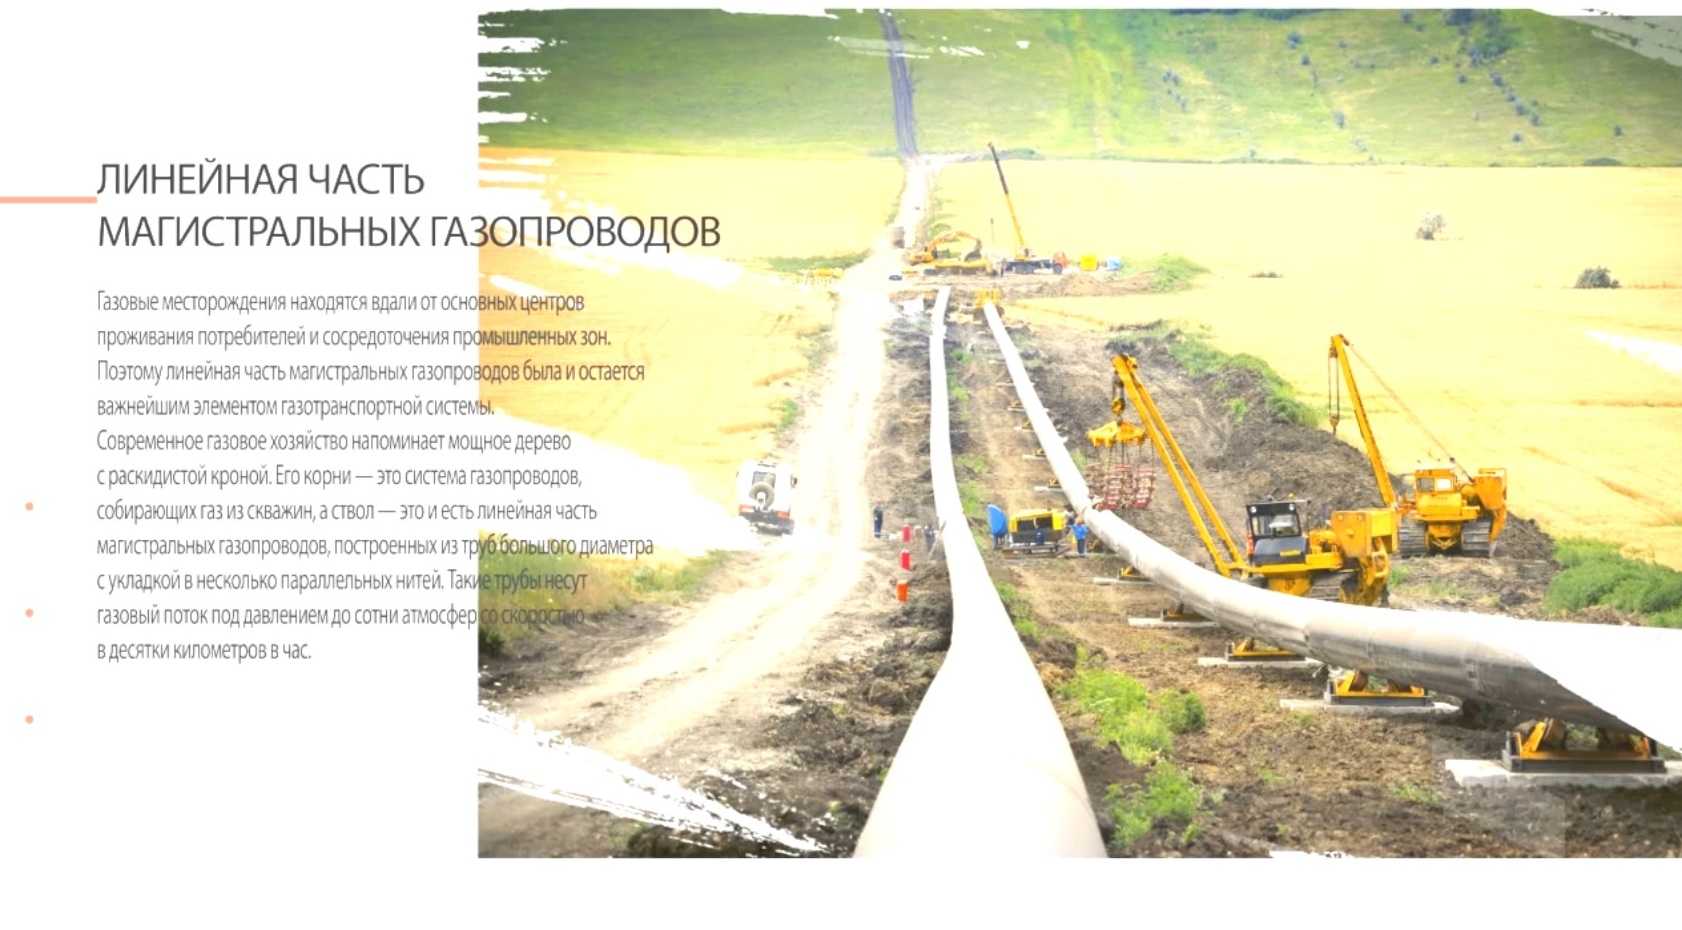 Назначение и классификация магистральных газопроводов